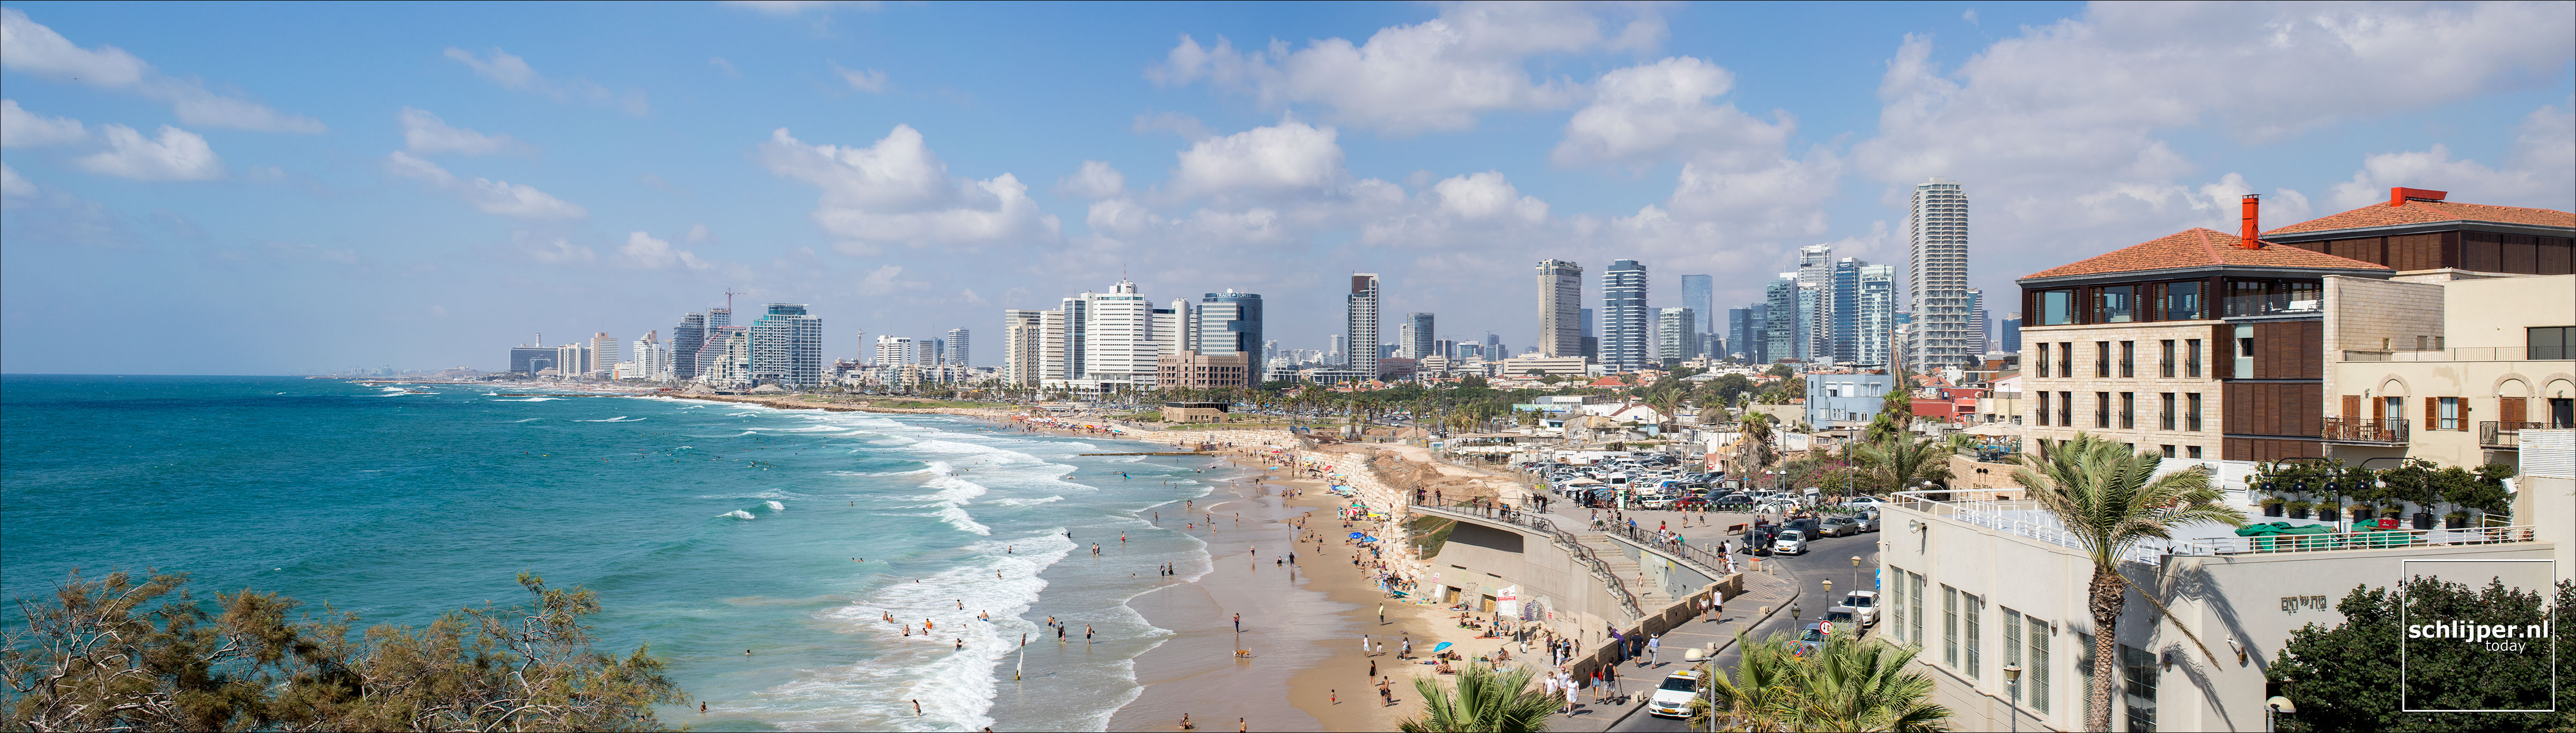 Israel, Tel Aviv, 20 juli 2018